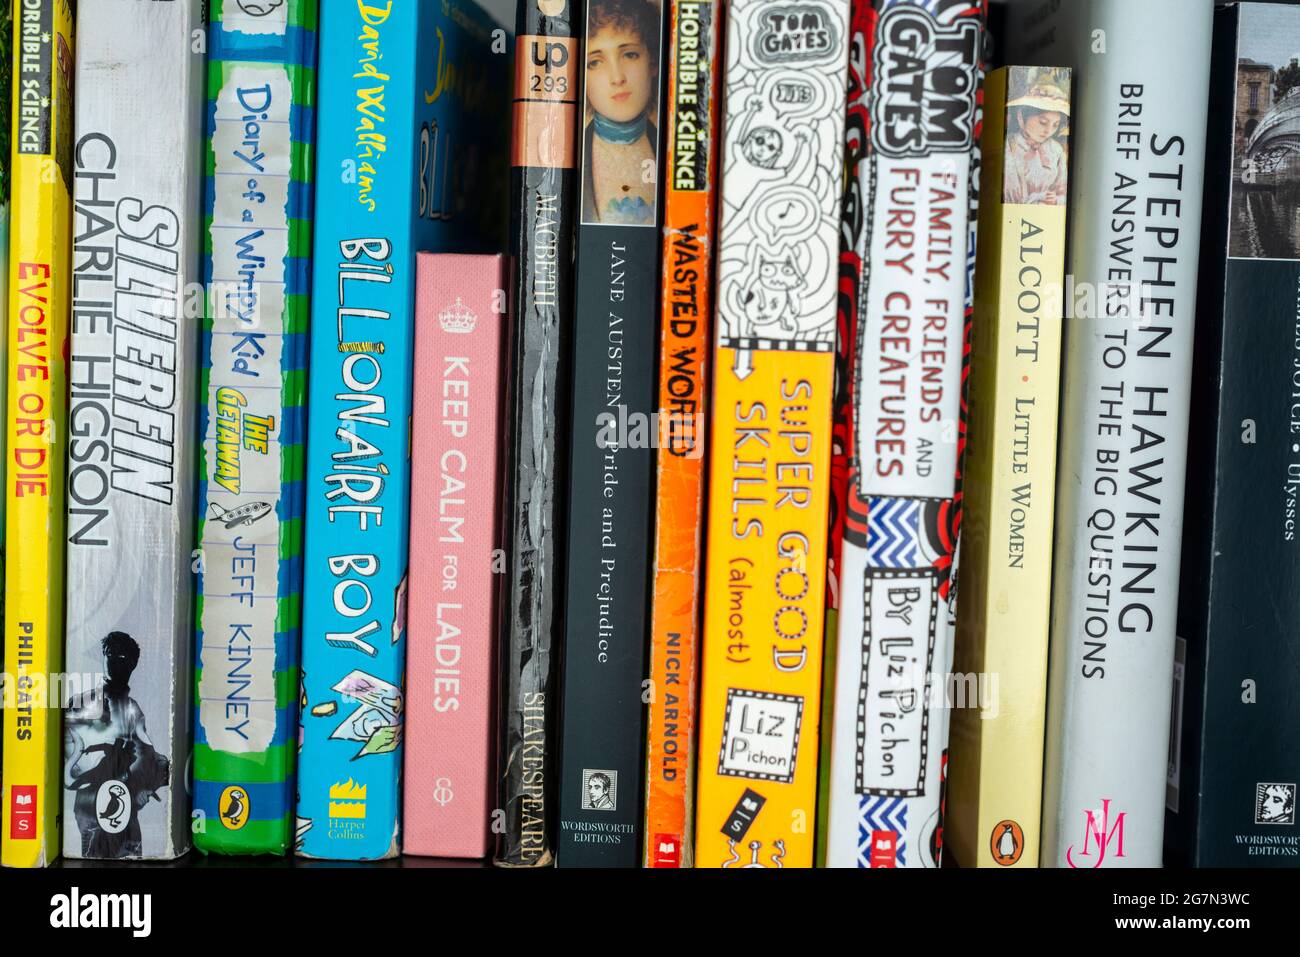 Books on bookshelf, English language Stock Photo